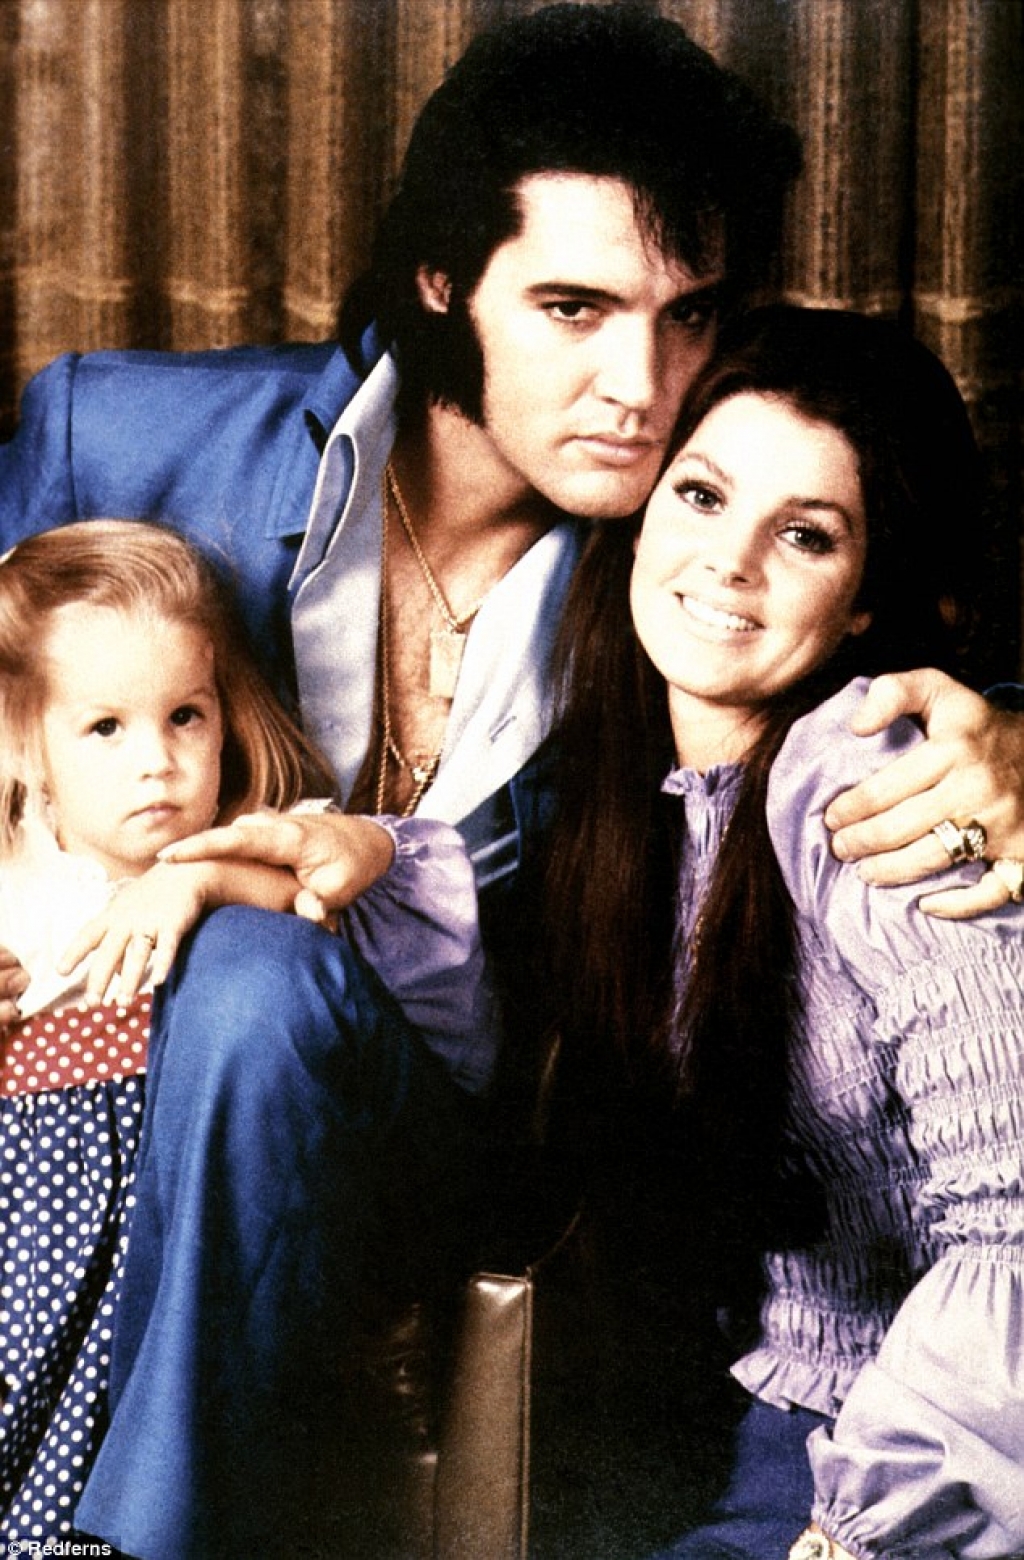 Presleyjevi vnukinji v socialnem skrbstvu, odkrili otroško pornografijo